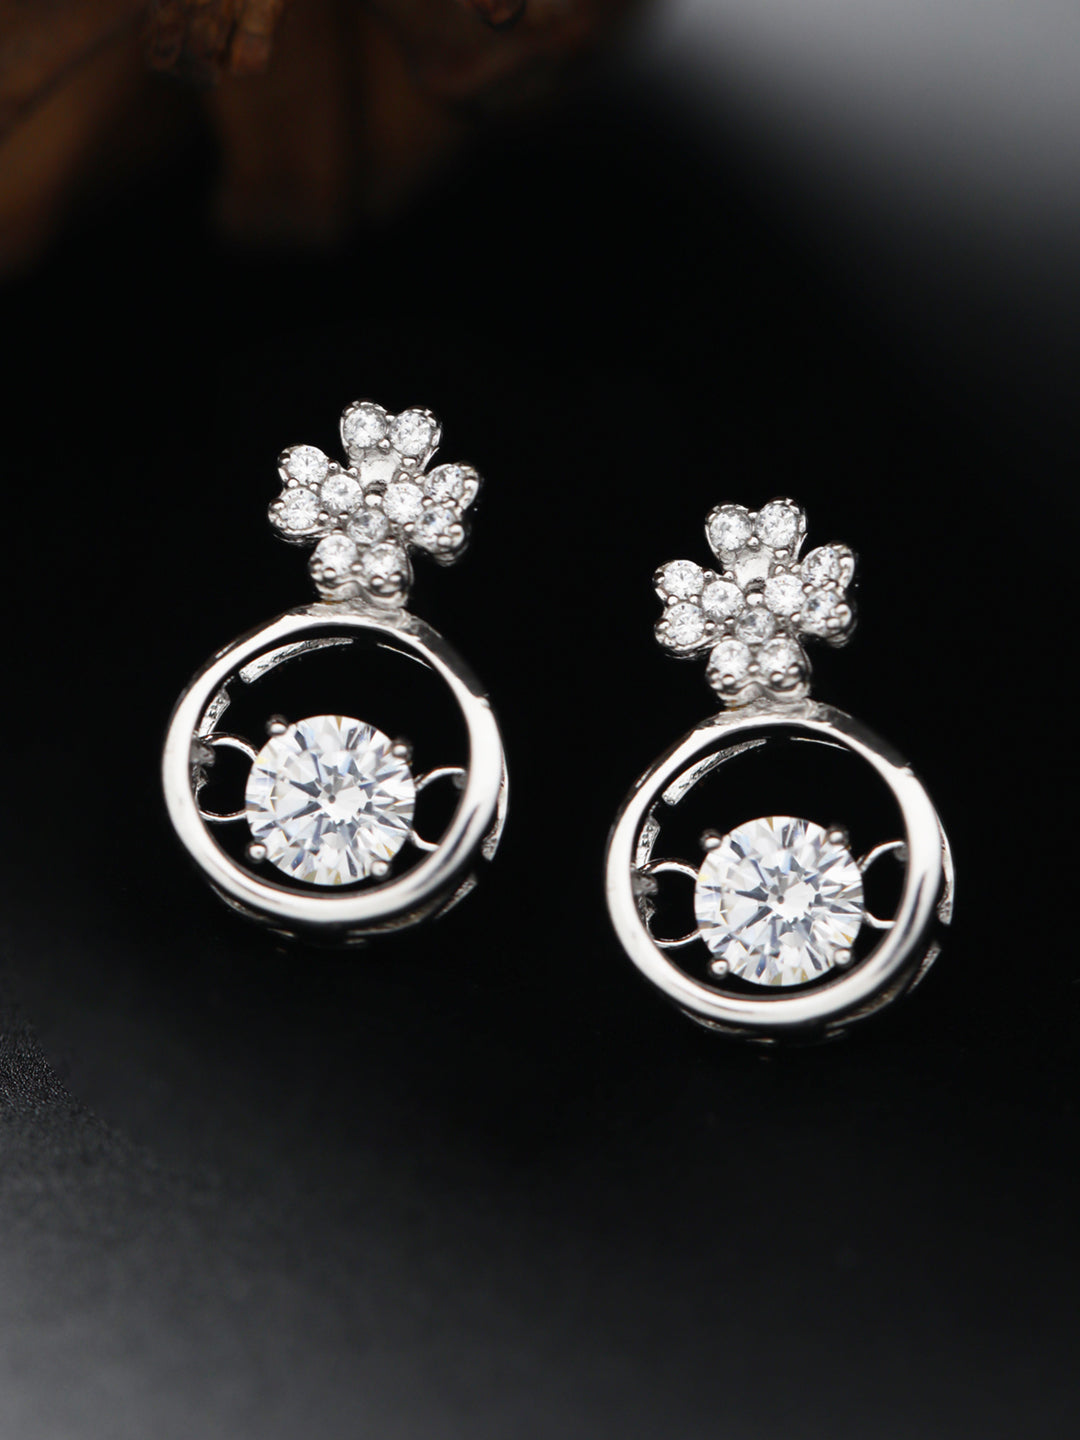 Sheer by Priyaasi Pretty Flower American Diamond Sterling Silver Earrings